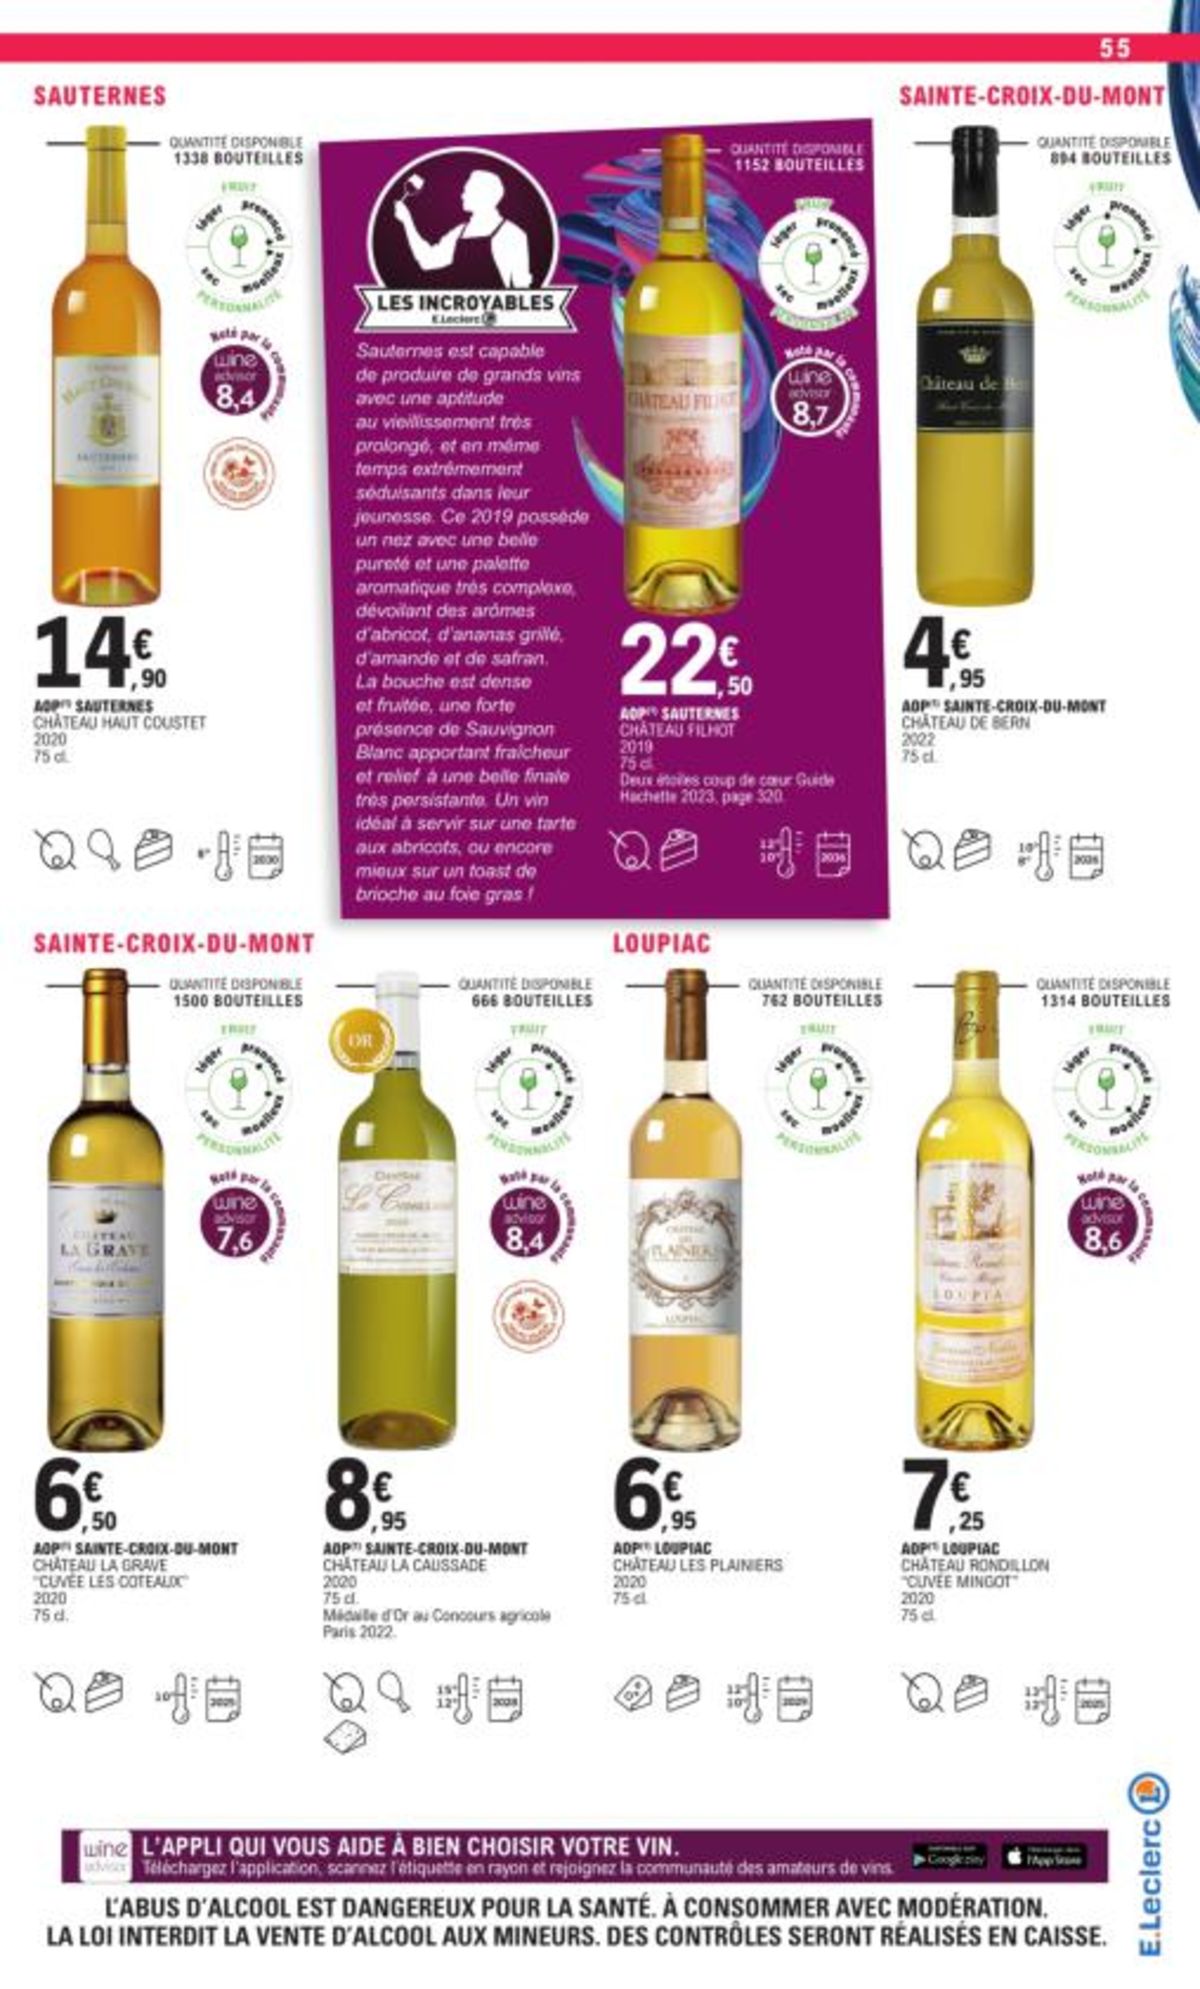 Catalogue Foire Aux Vins - Mixte, page 02947